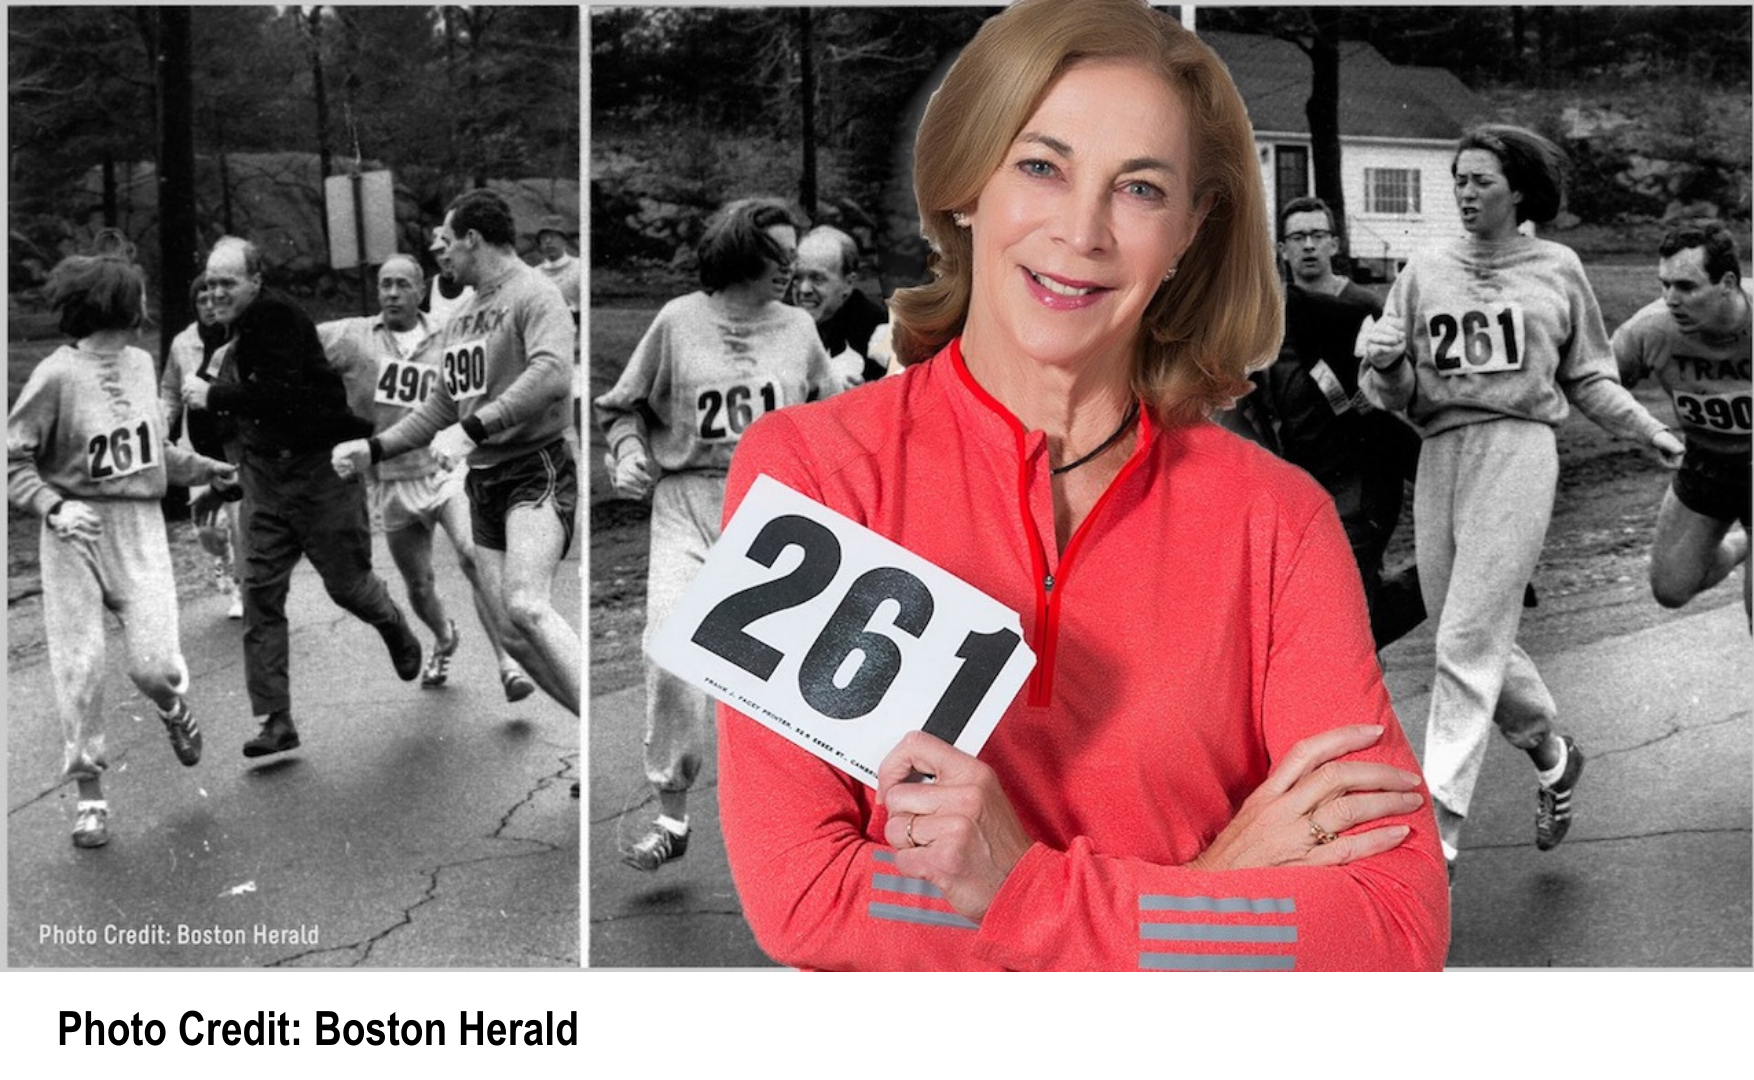 Kathrine Switzer, eine Ikone der Frauenlaufbewegung, posiert stolz mit ihrer Startnummer 261, vor einem historischen Foto von ihrem berühmten Boston Marathonlauf